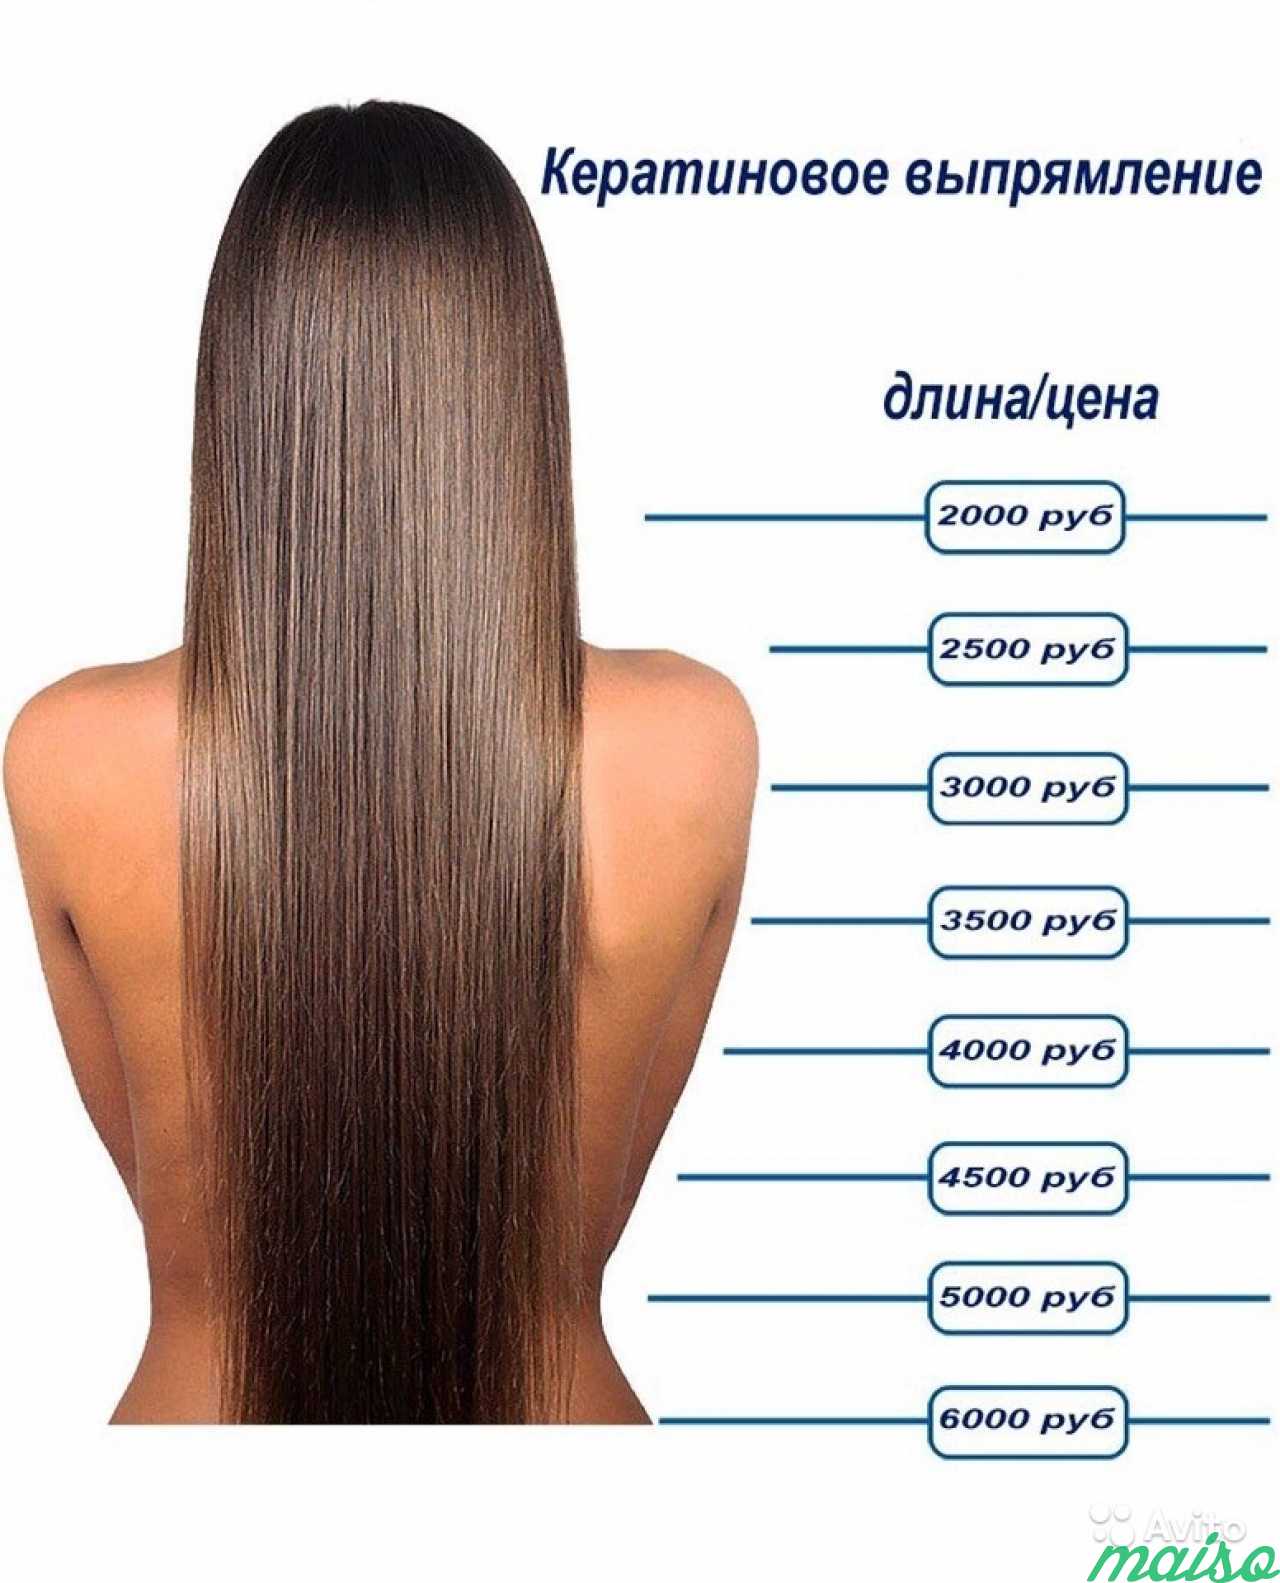 Что указывают в длине волос